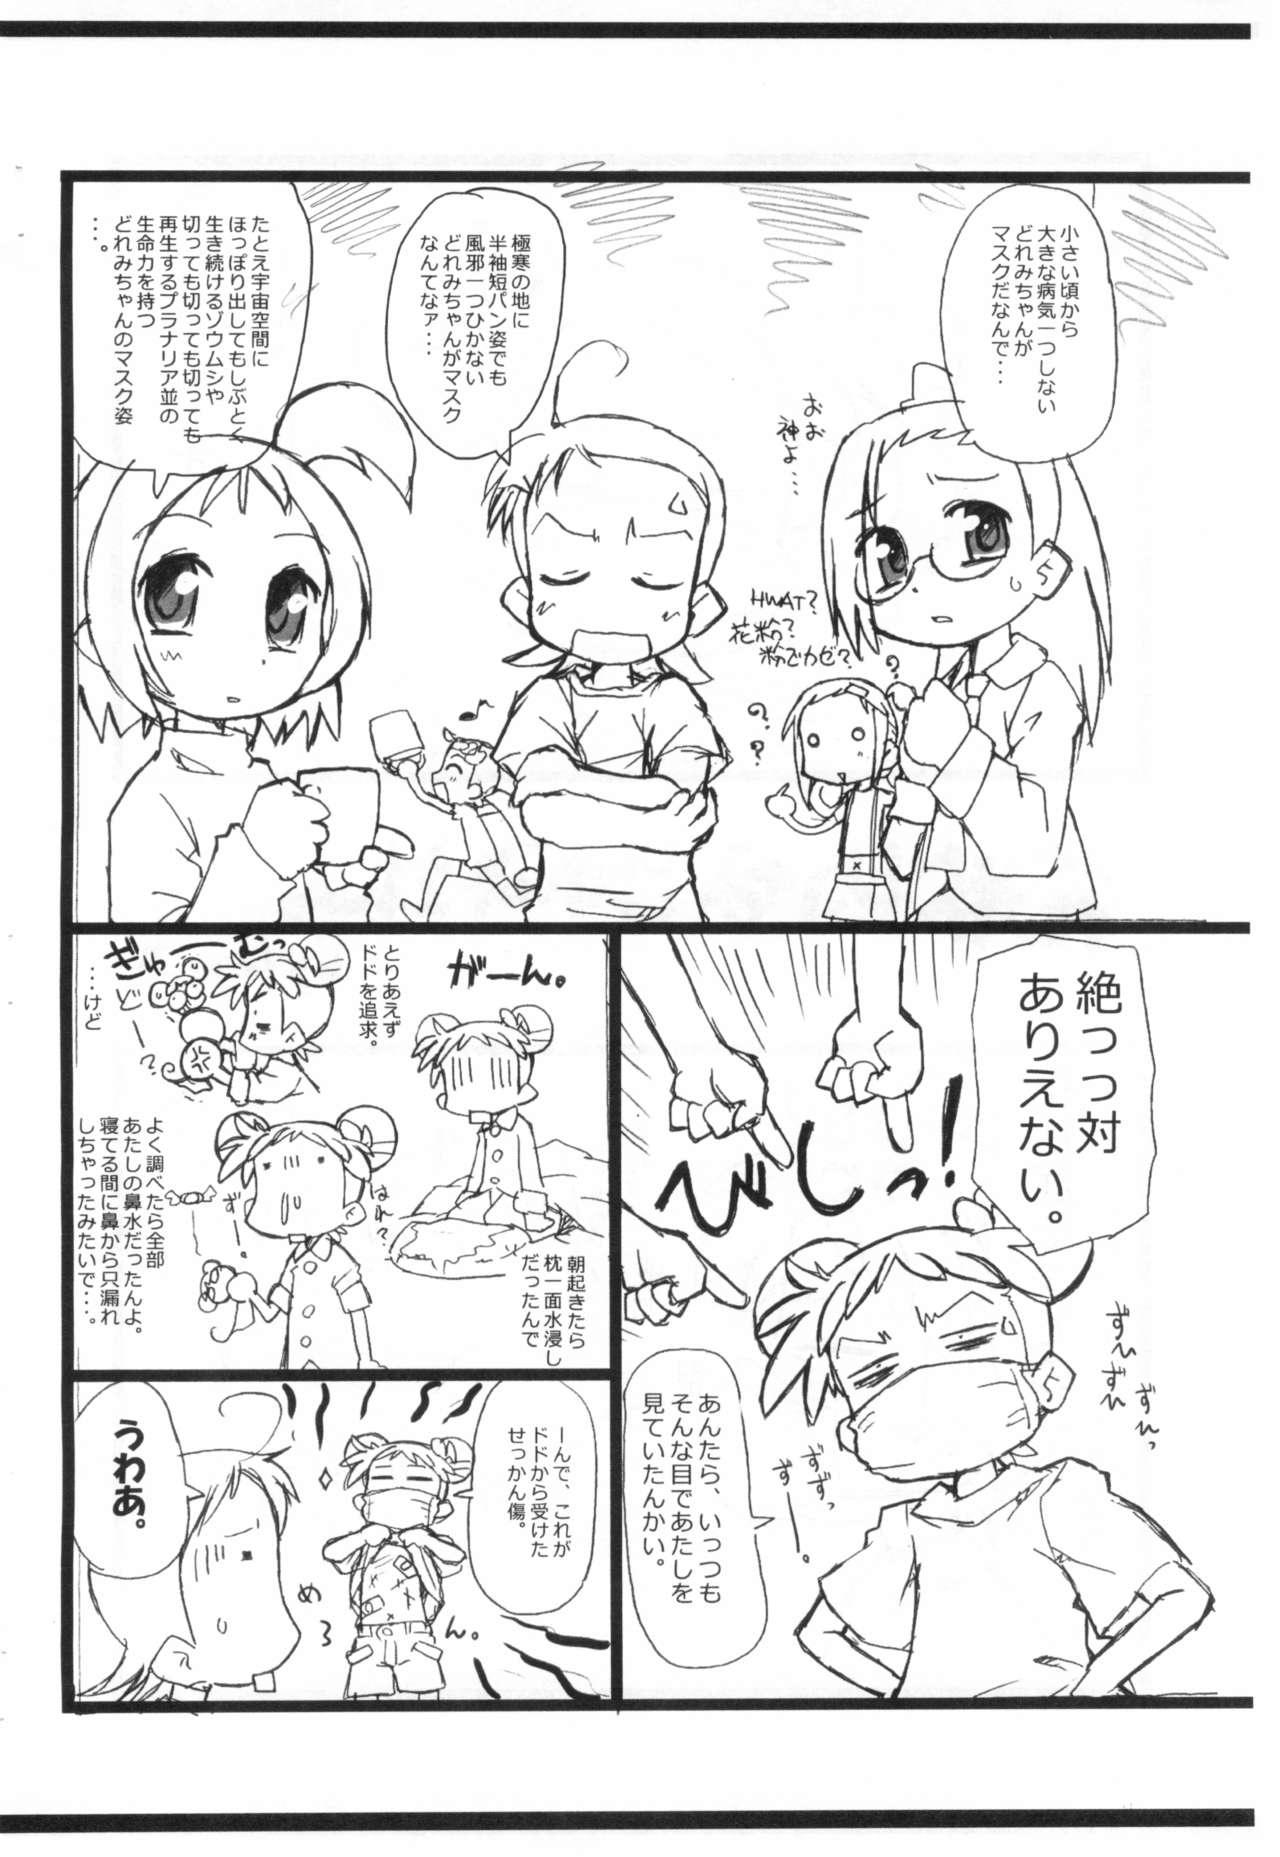 Nuru Kafun to Kiseichuu to Majo Minarai. - Ojamajo doremi | magical doremi Hooker - Page 4